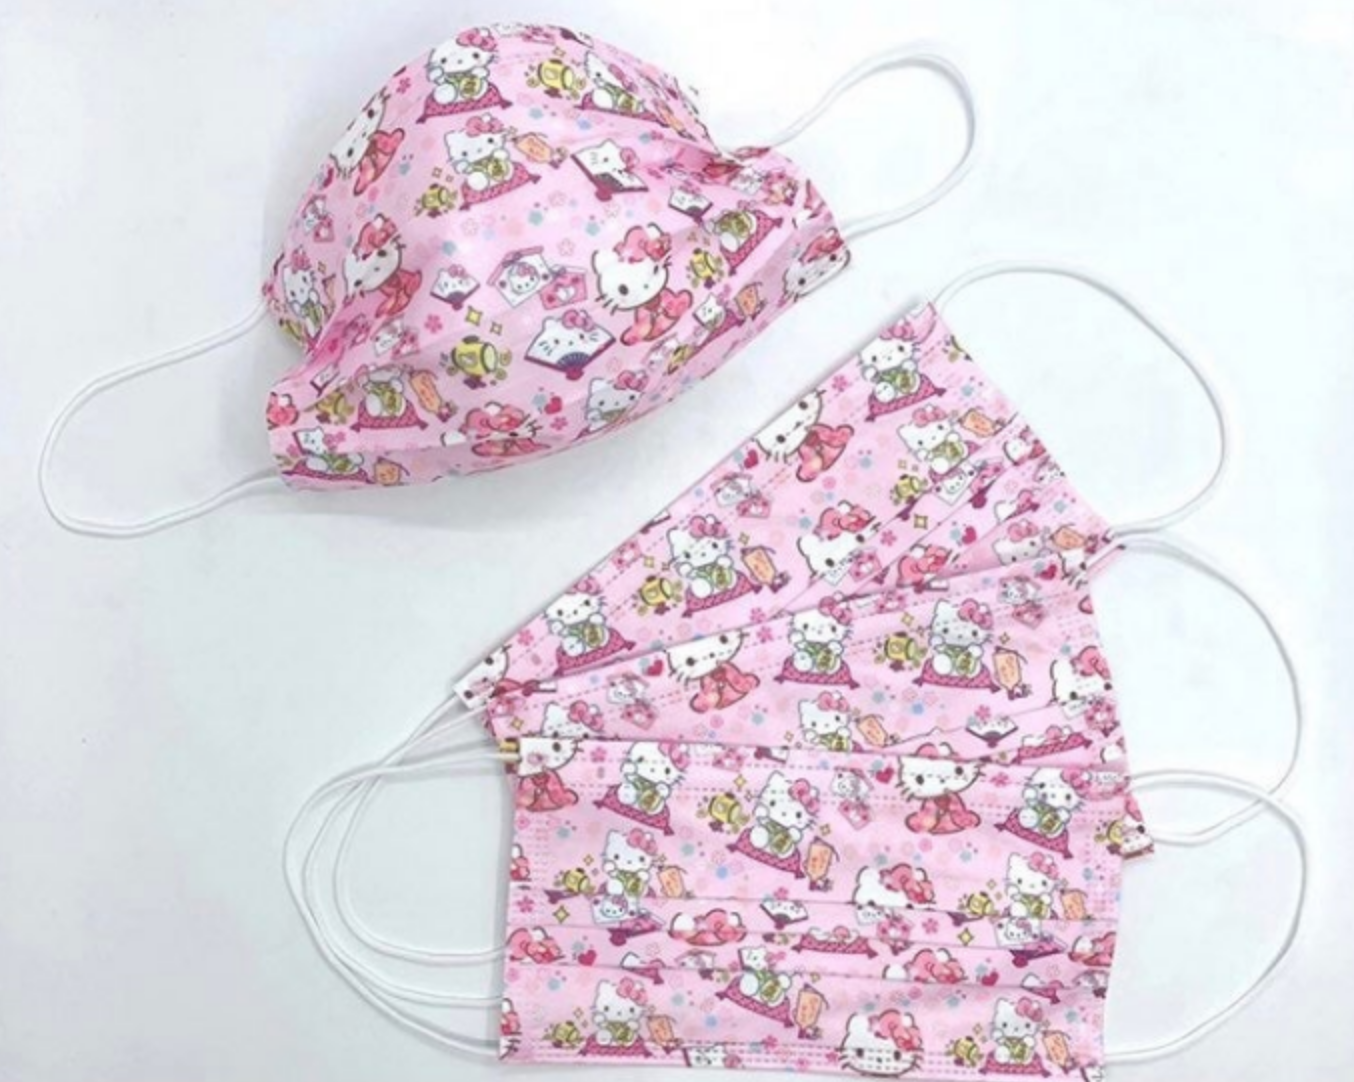 10 pieces Hello Kitty Kimono Disposable Masks